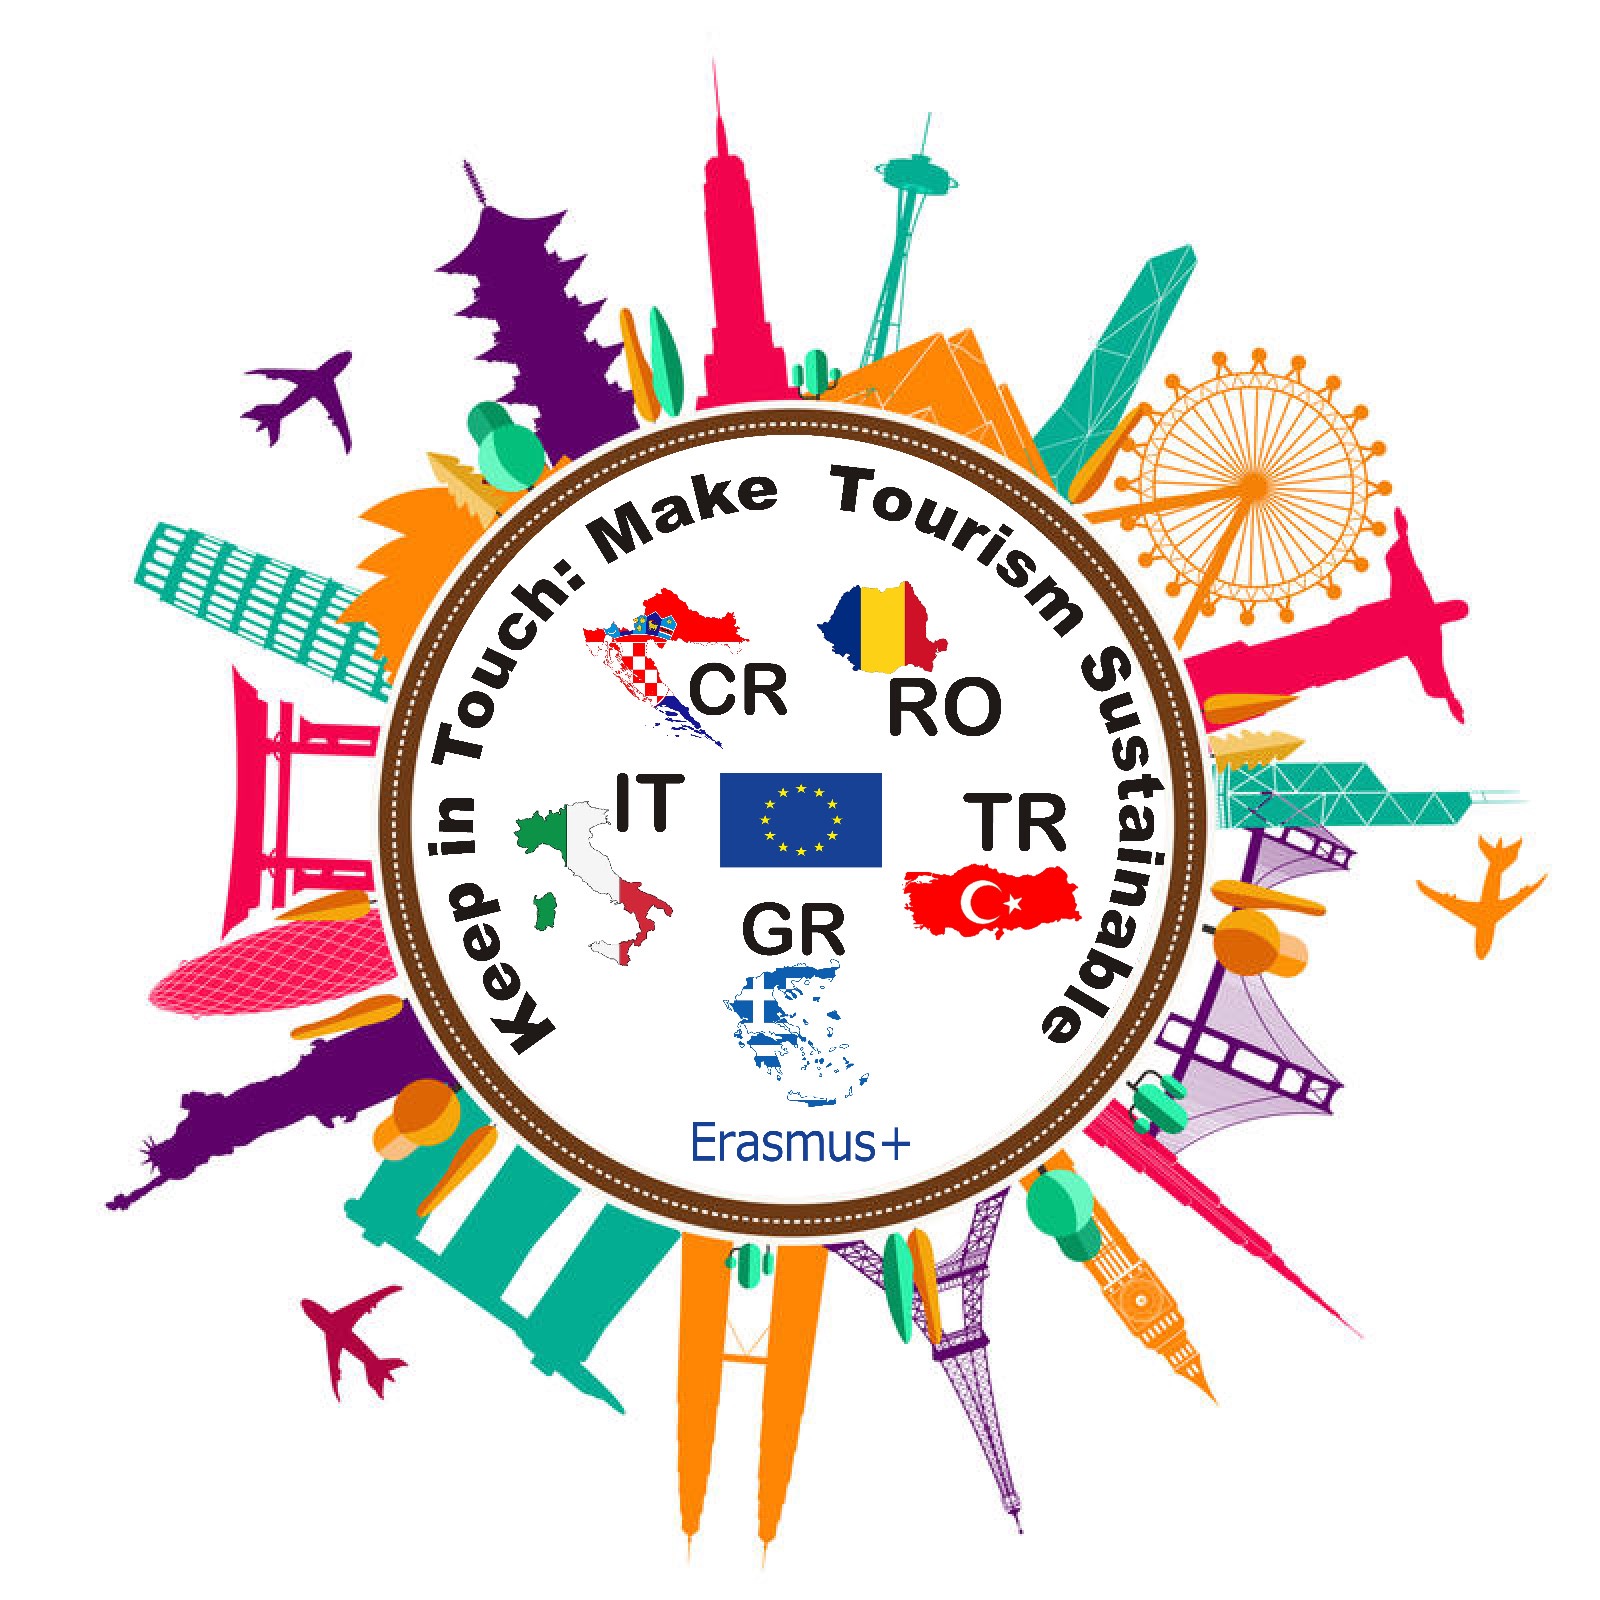 2η Διεθνής συνάντηση εκπαιδευτικών και μαθητών στο πλαίσιο του ευρωπαϊκού προγράμματος Erasmus+  “Keep in Touch: Make Tourism Sustainable!”, 1ο ΓΕΛ Ρόδου-Βενετόκλειο, 3 – 9 Απριλίου 2022 .